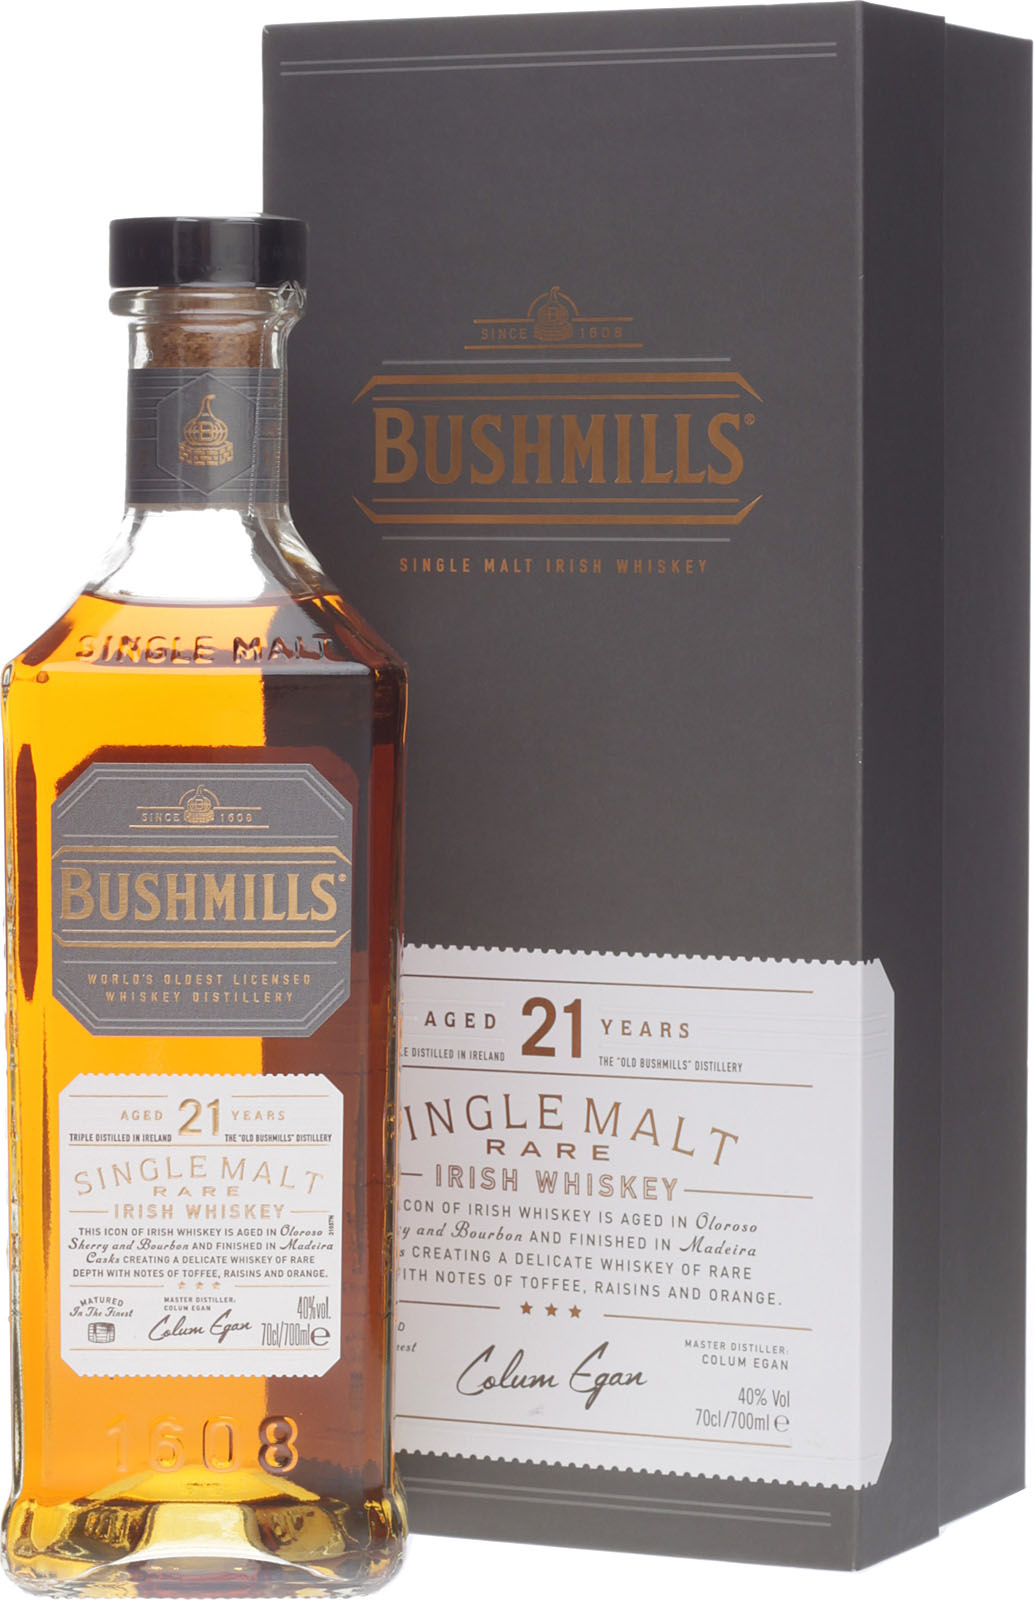 Irish Shop Bushmills Whisky hier Jahre im günstigen 21